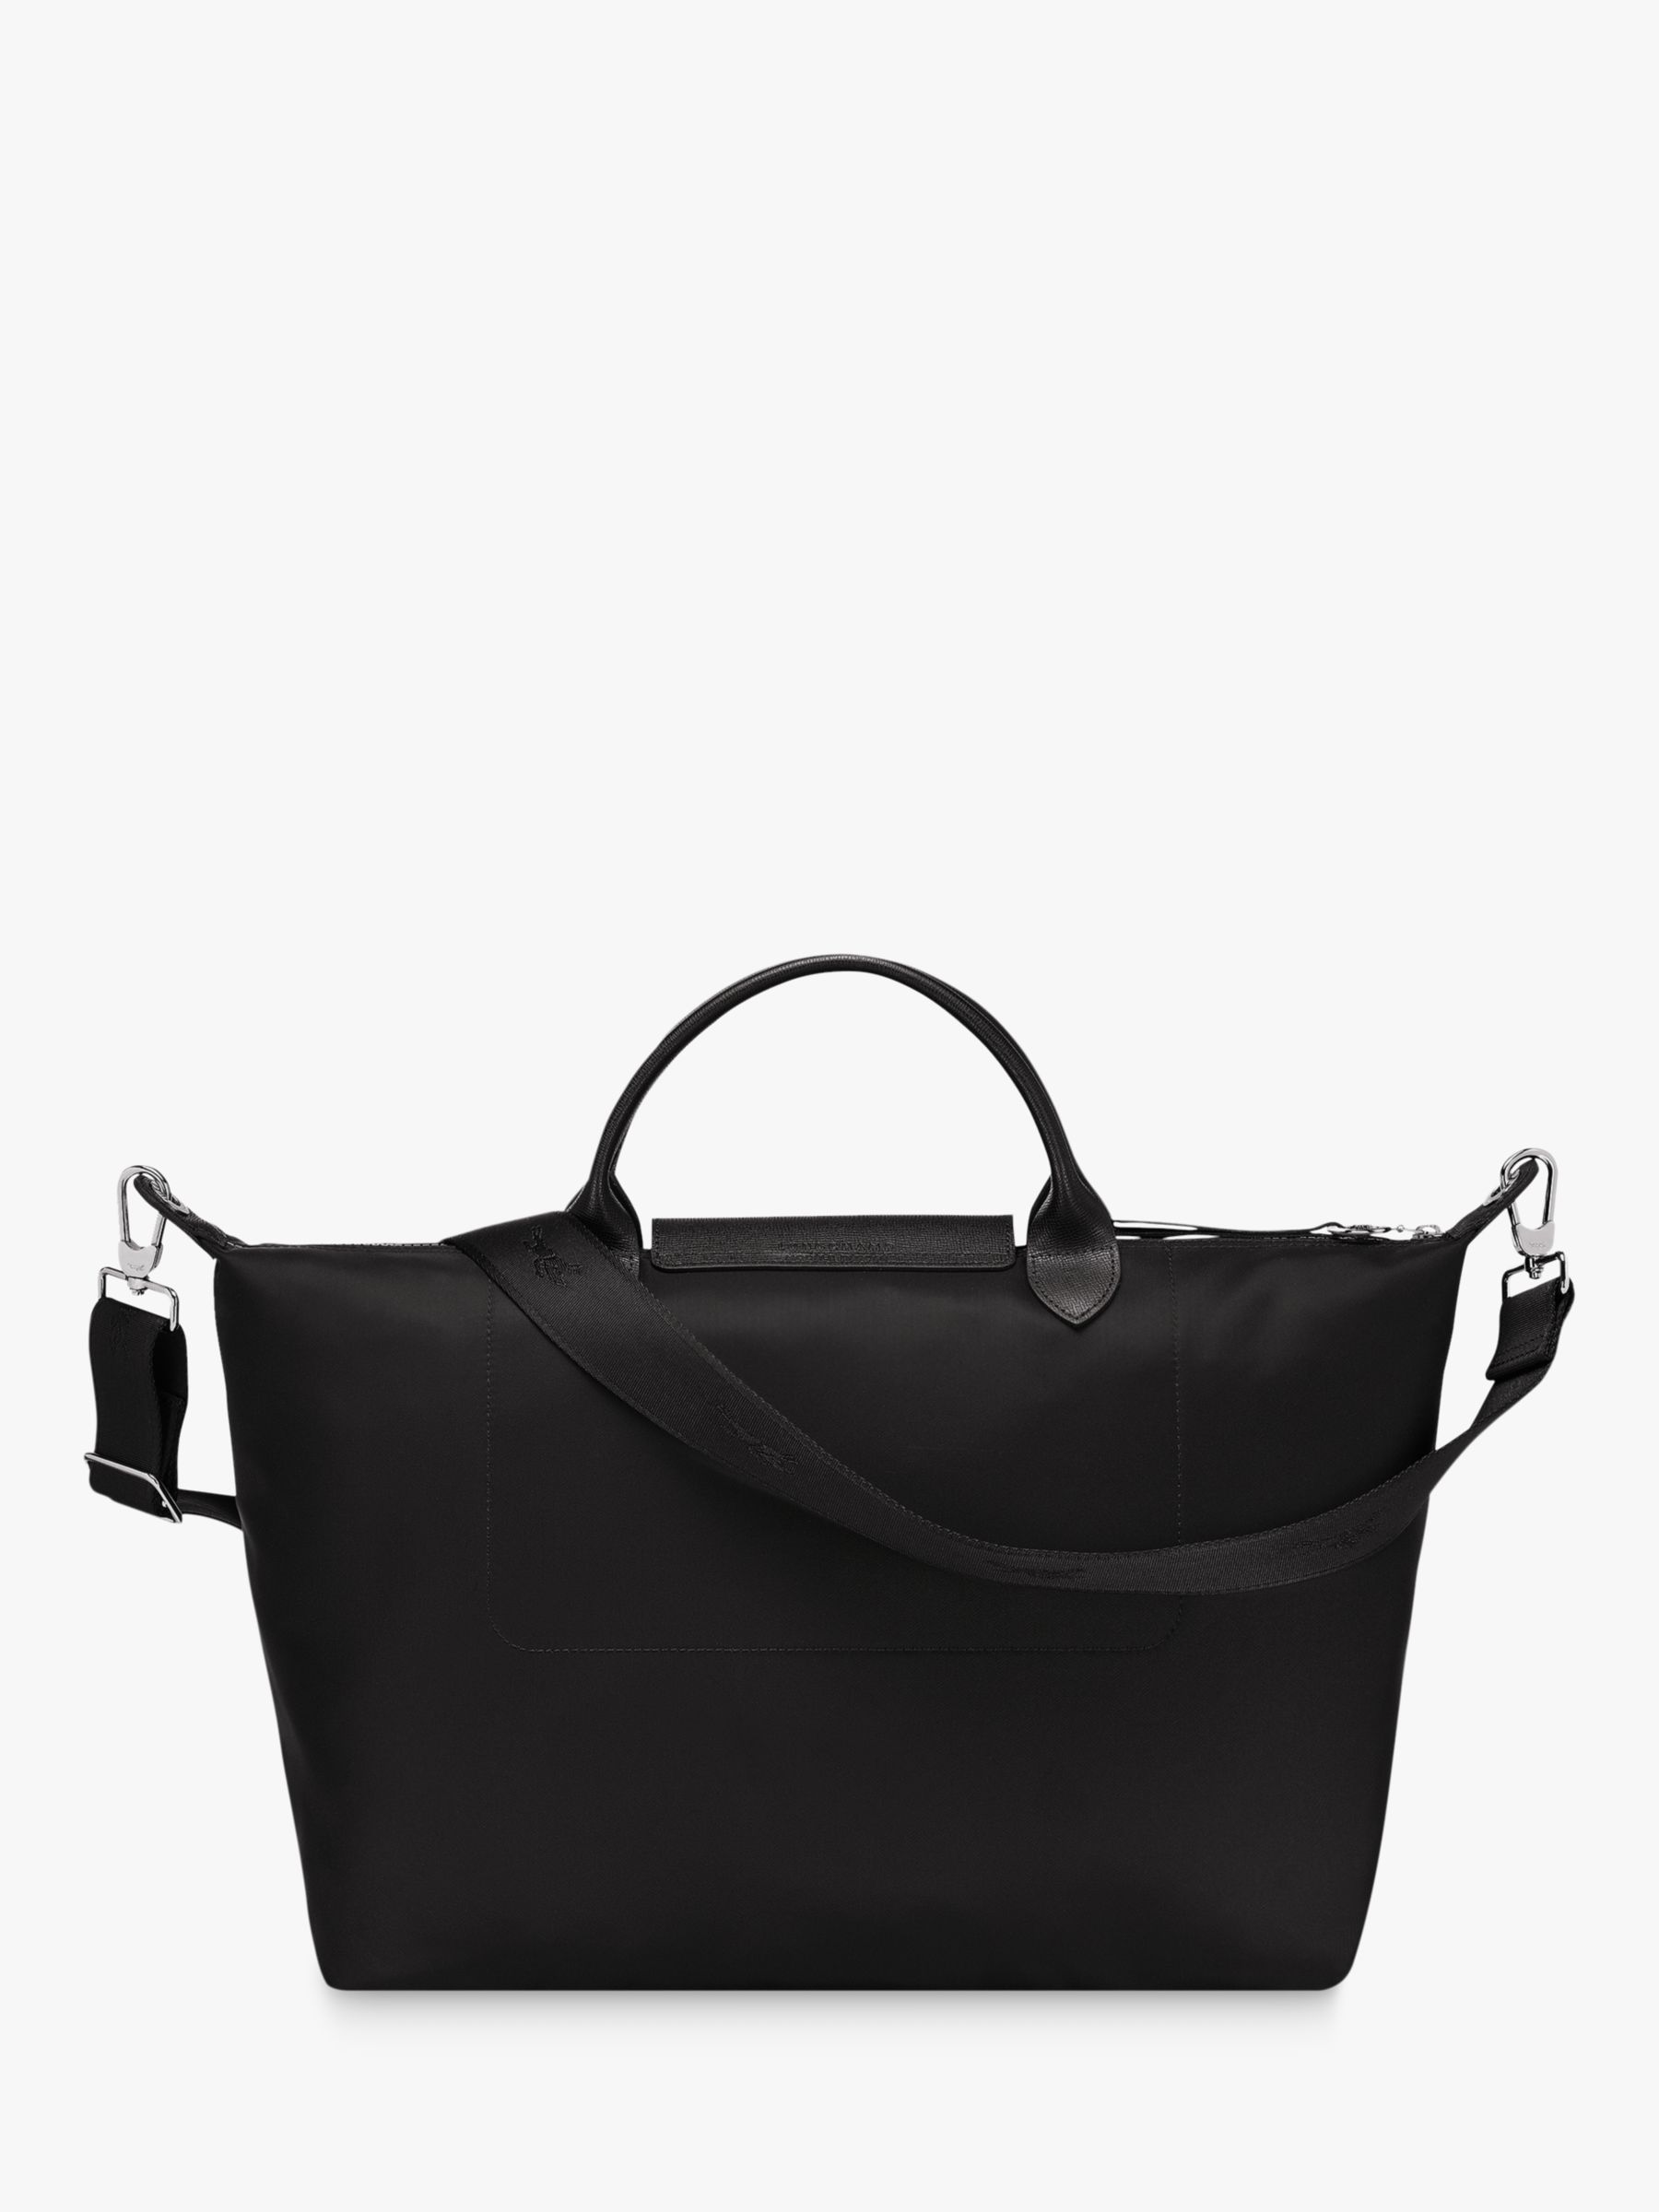 Longchamp Le Pliage Néo XL Top Handle Bag, Black at John Lewis & Partners